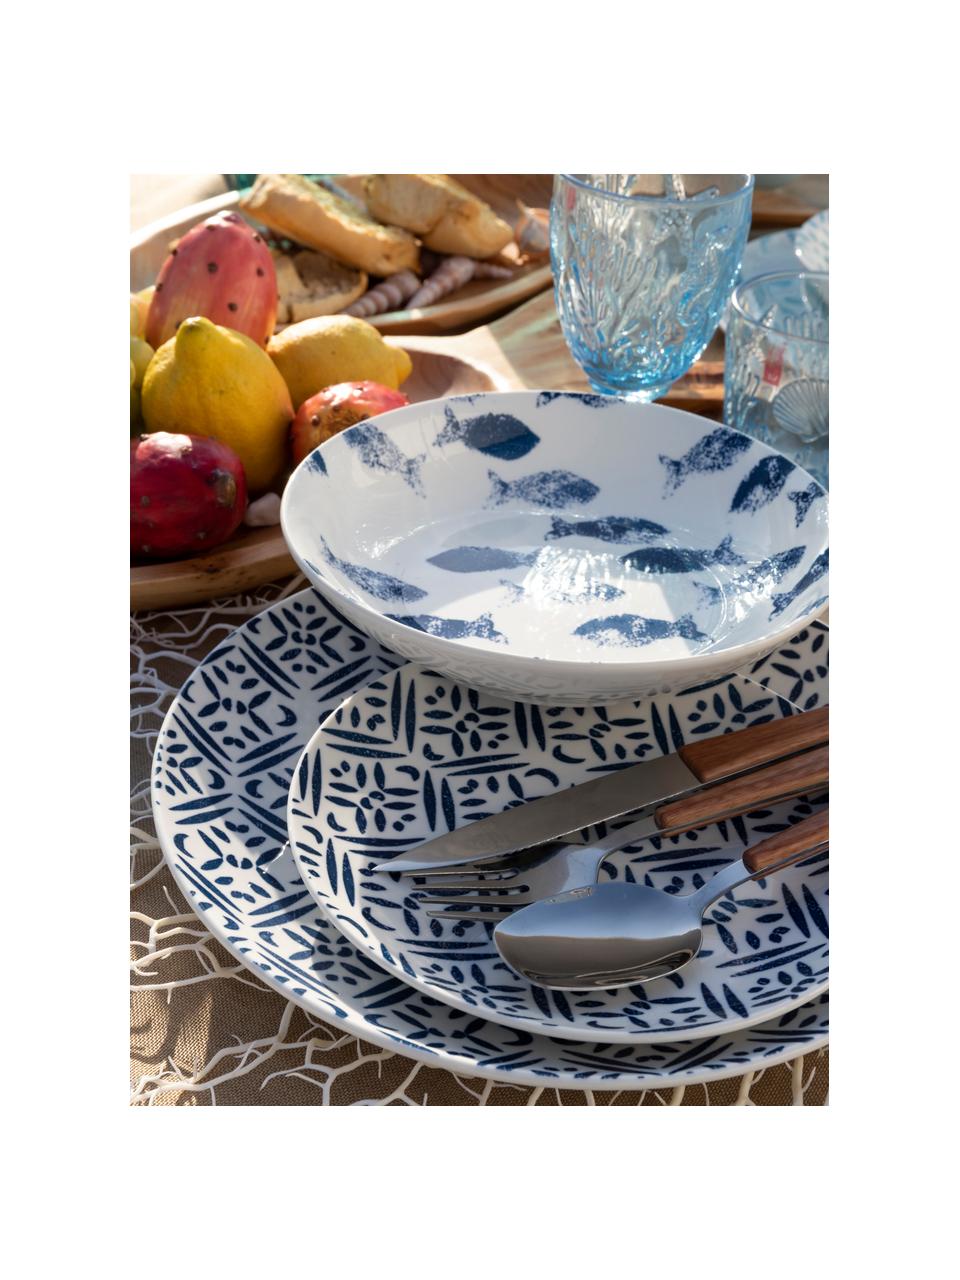 Serviesset met patroon Playa in blauw/wit, 6 personen (18-delig), Porselein, Blauw, wit, Set met verschillende formaten